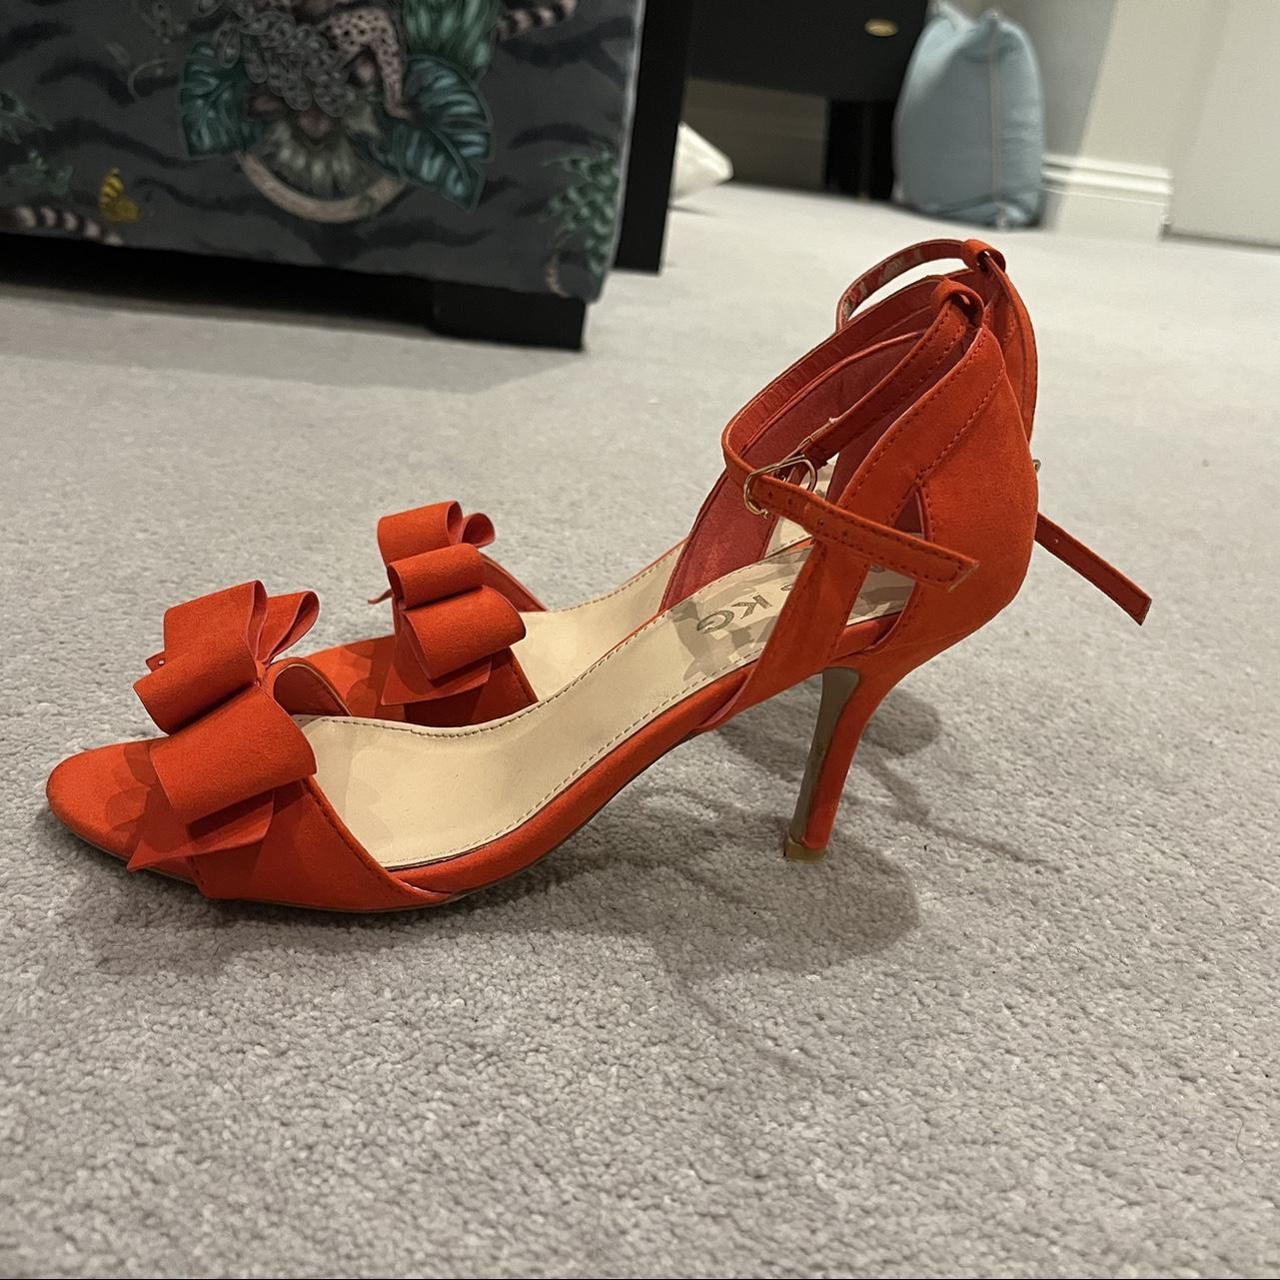 Kurt Geiger shoes coral red orange UK size 6. Some... - Depop